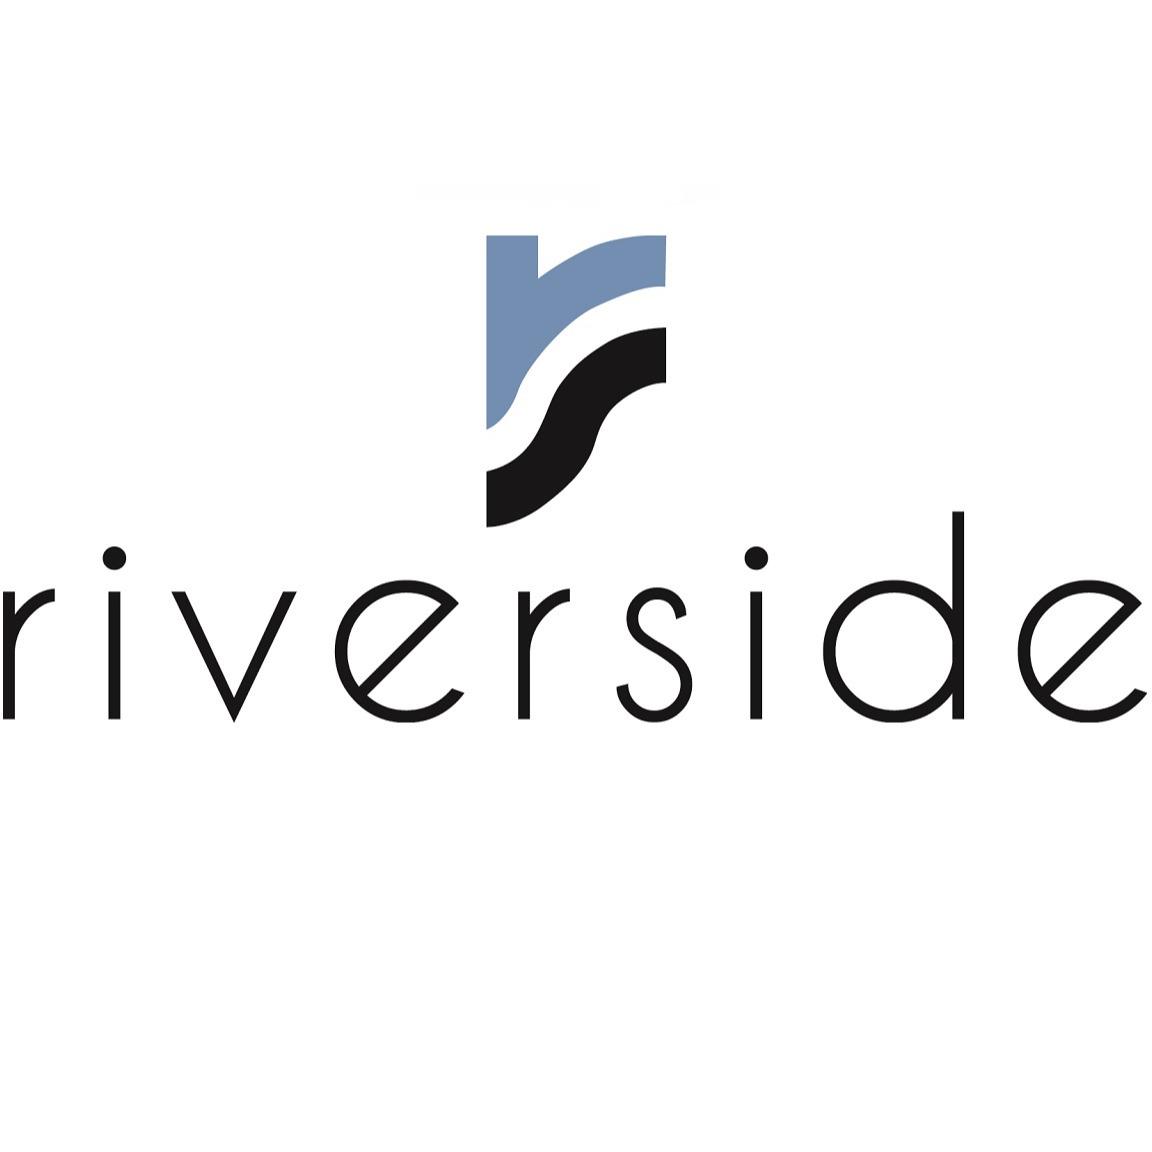 Riverside Apartments - Alexandria, VA 22303 - (571)366-5675 | ShowMeLocal.com